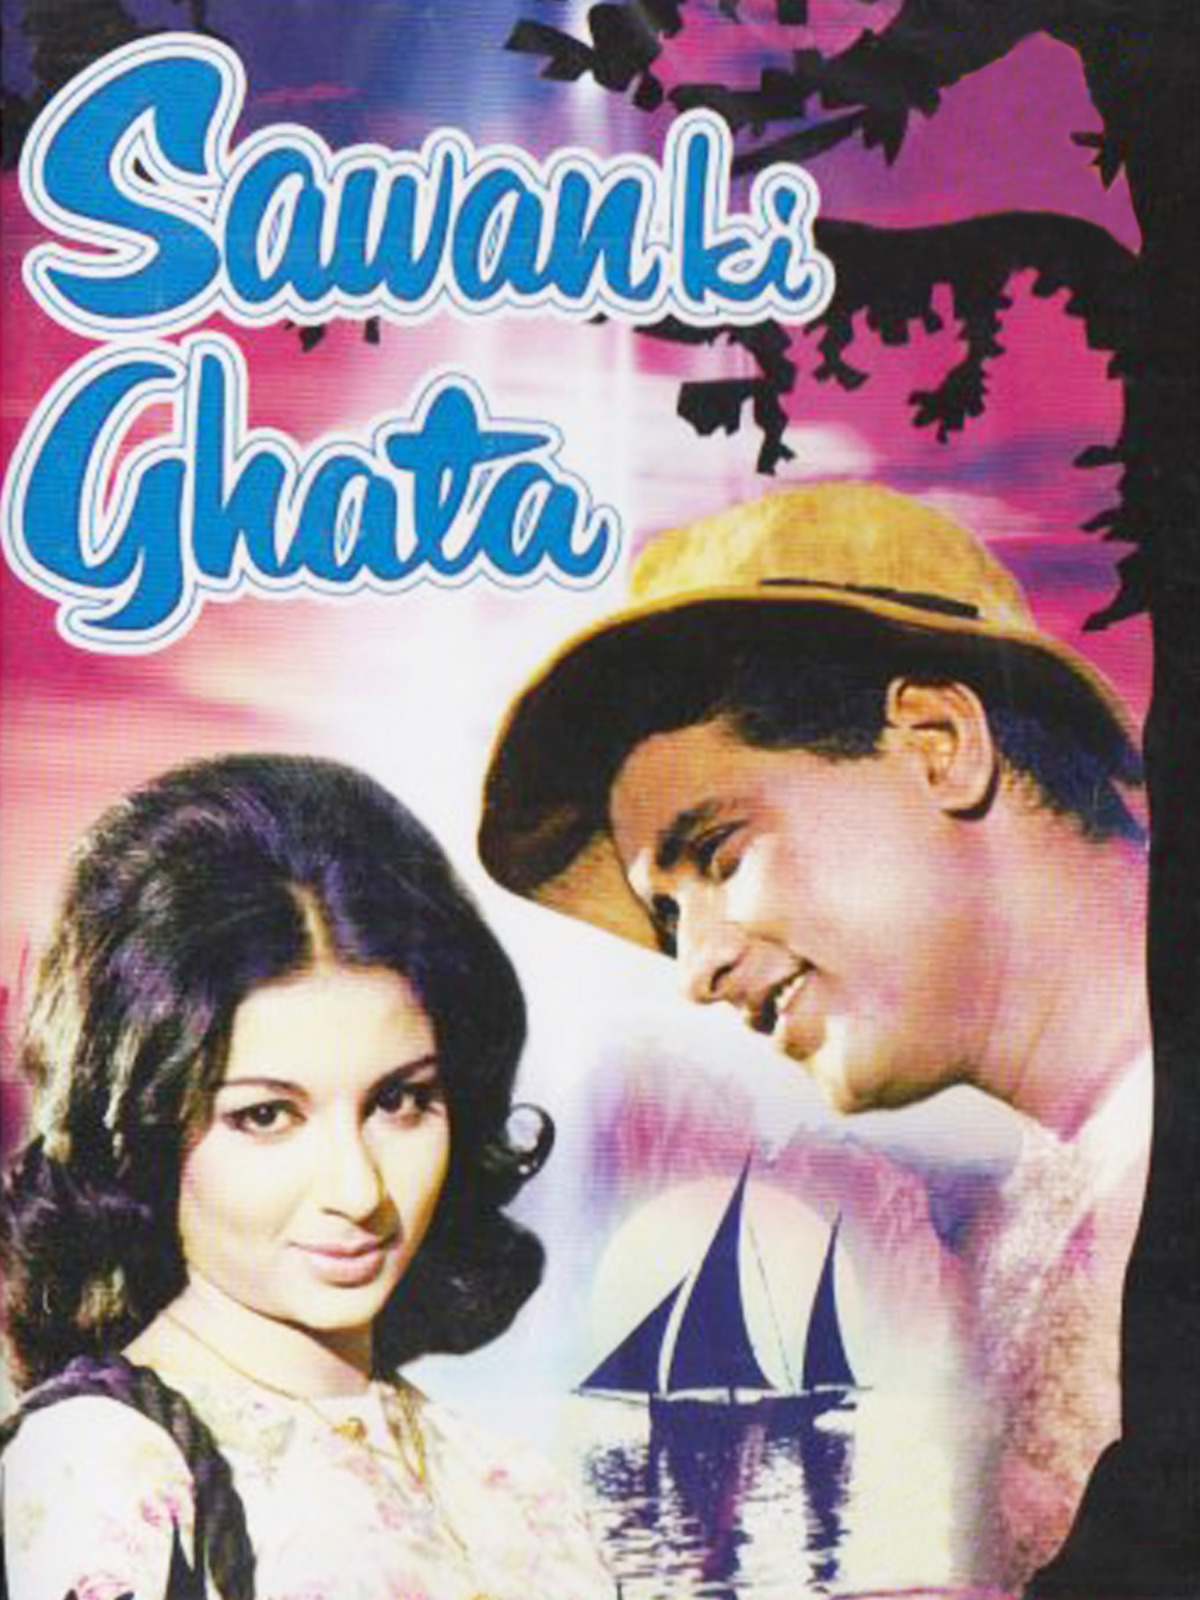 Sawan Ki Ghata Review Sawan Ki Ghata Movie Review Sawan Ki Ghata